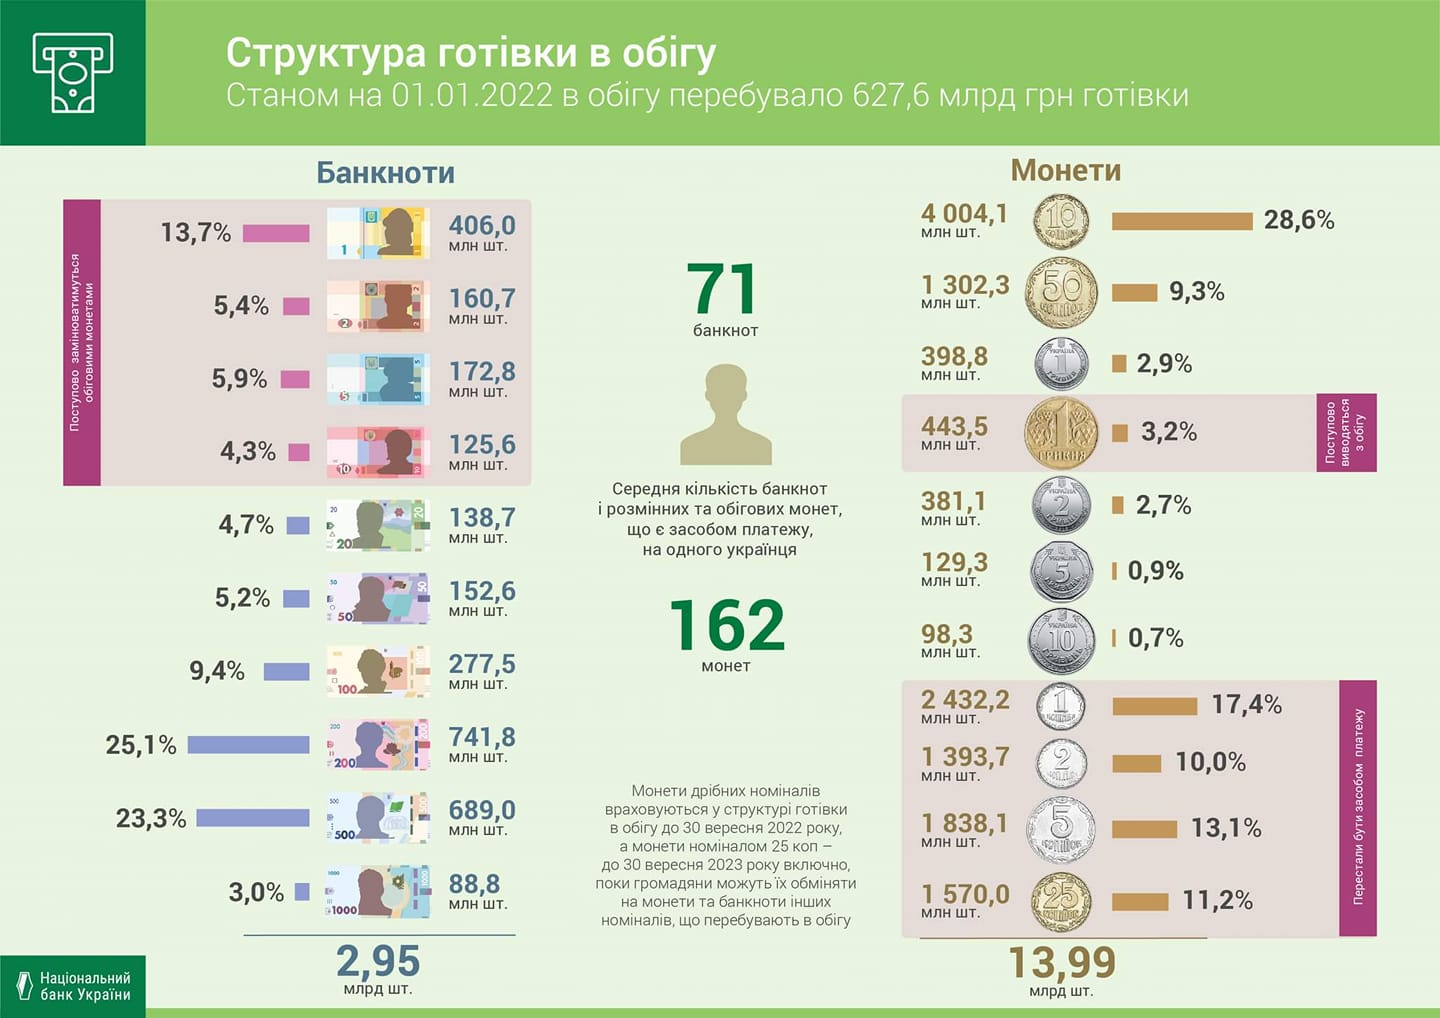 Графіка Національного банку України